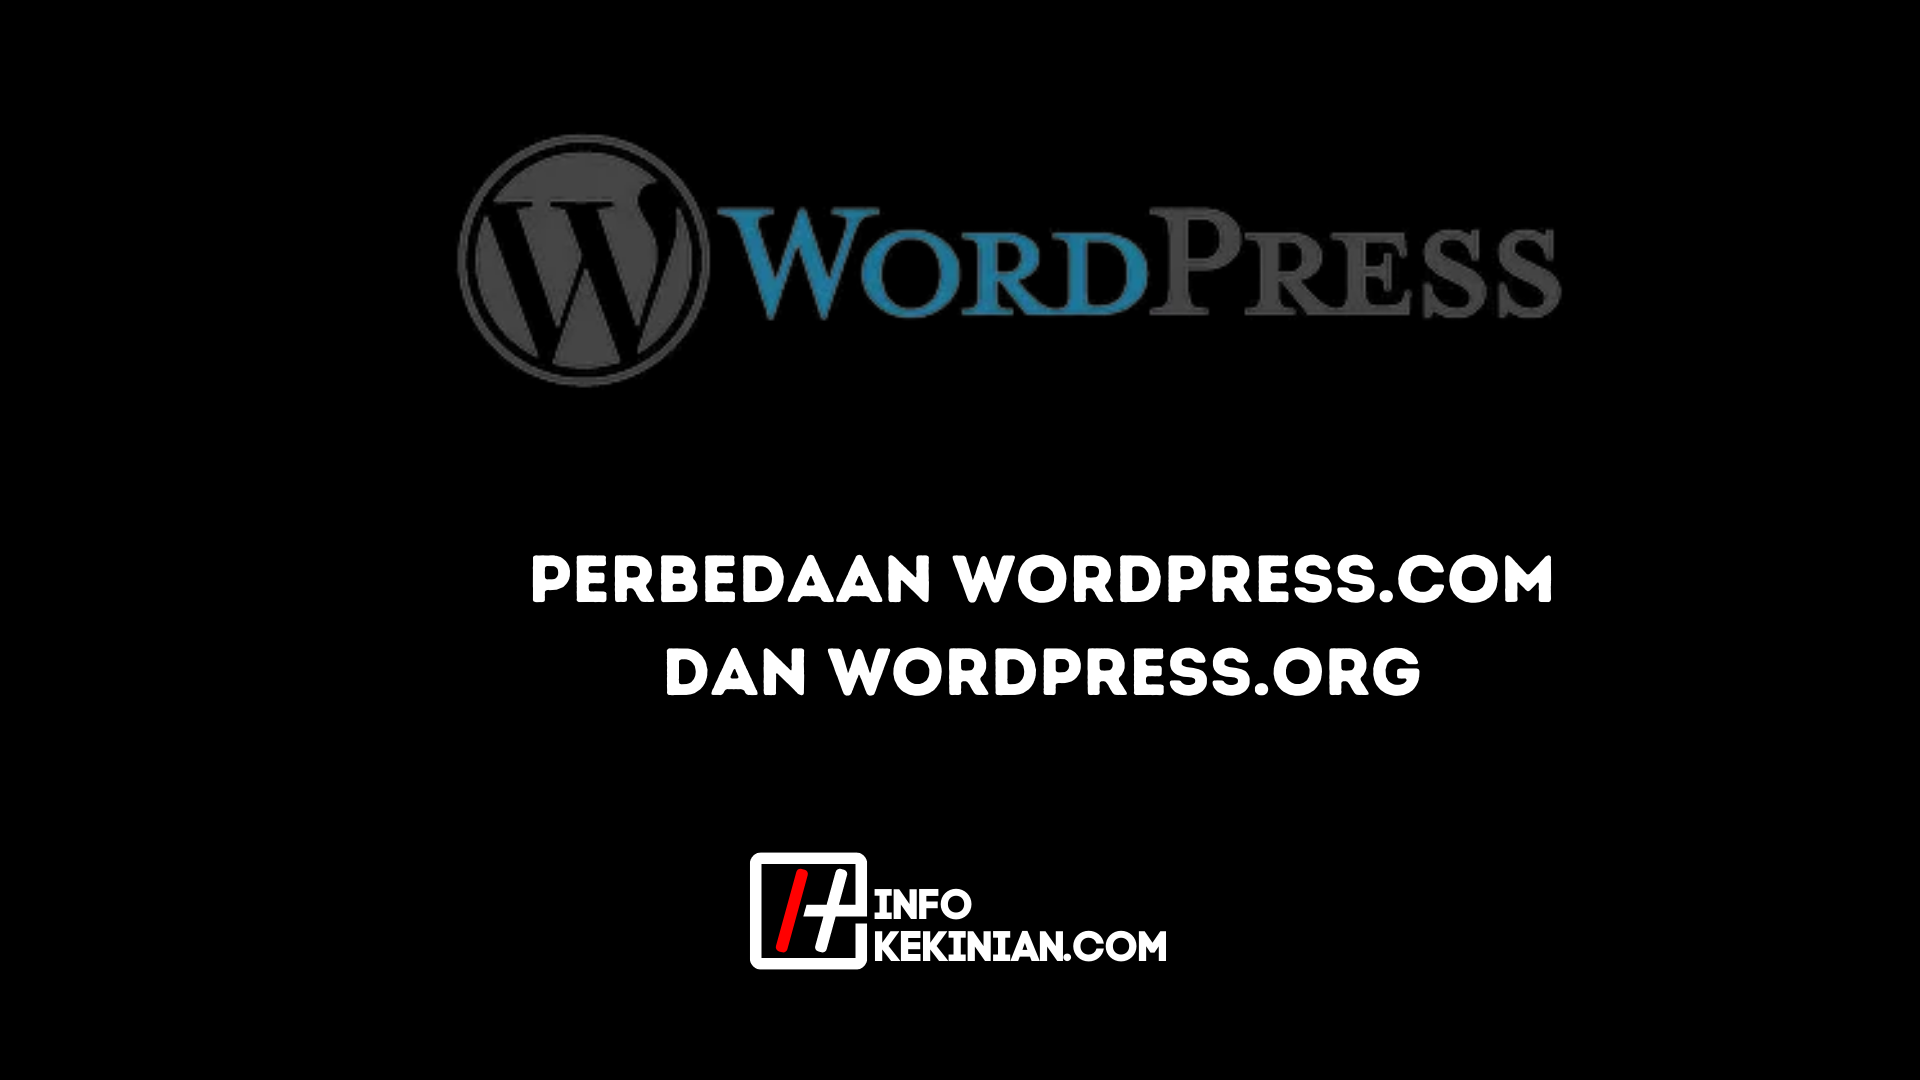 Perbedaan Wordpress.com dan Wordpress.org 1